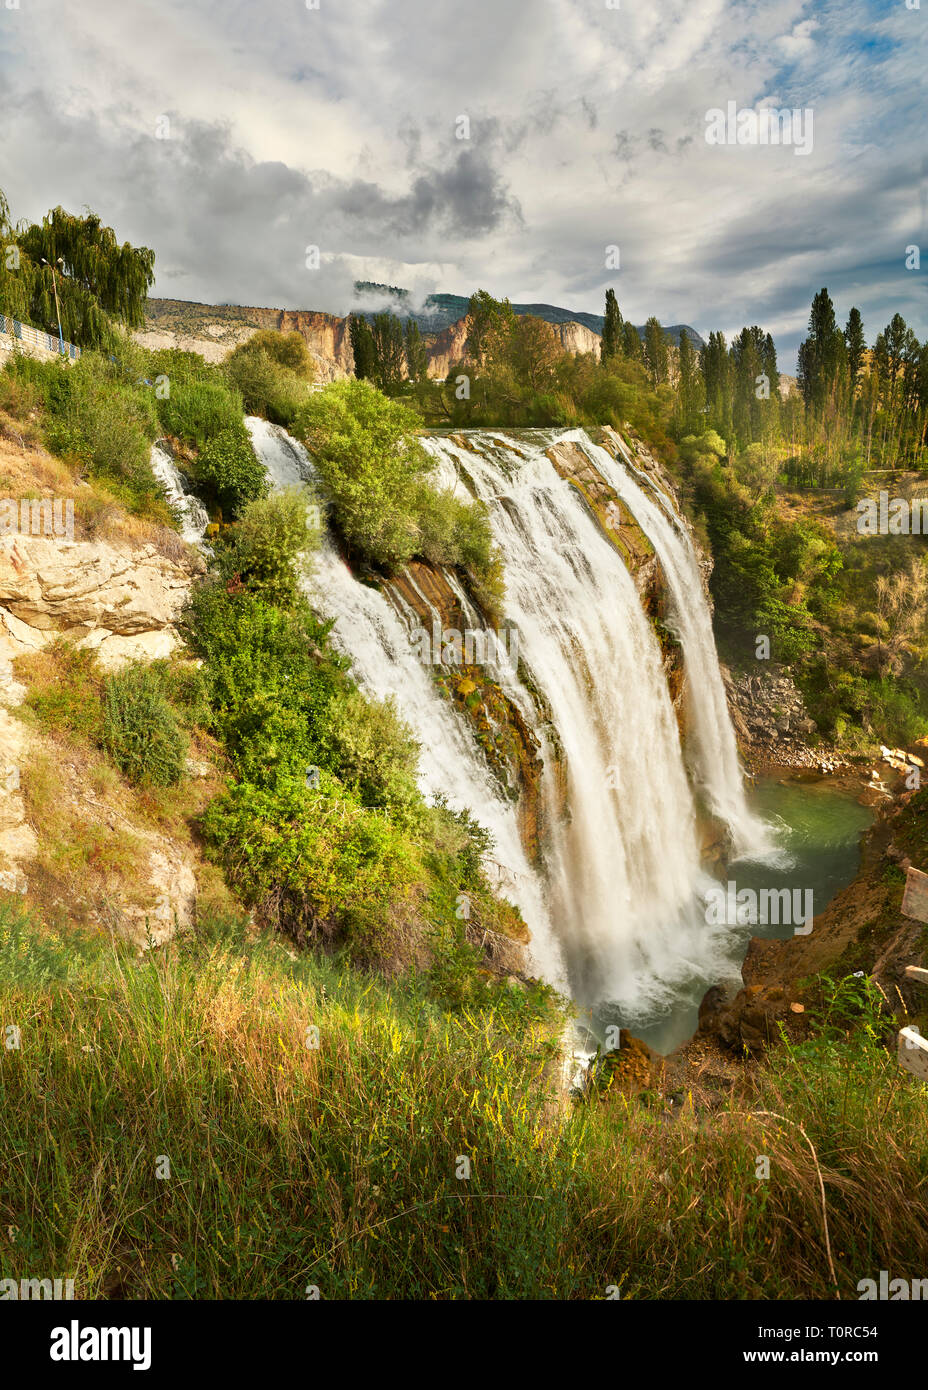 Bilder & Bilder der Tortum Wasserfälle, çoruh Tal, Erzurum im östlichen Anatolien, Türkei. Die tortum Wasserfälle sind die größten in der Türkei Stockfoto